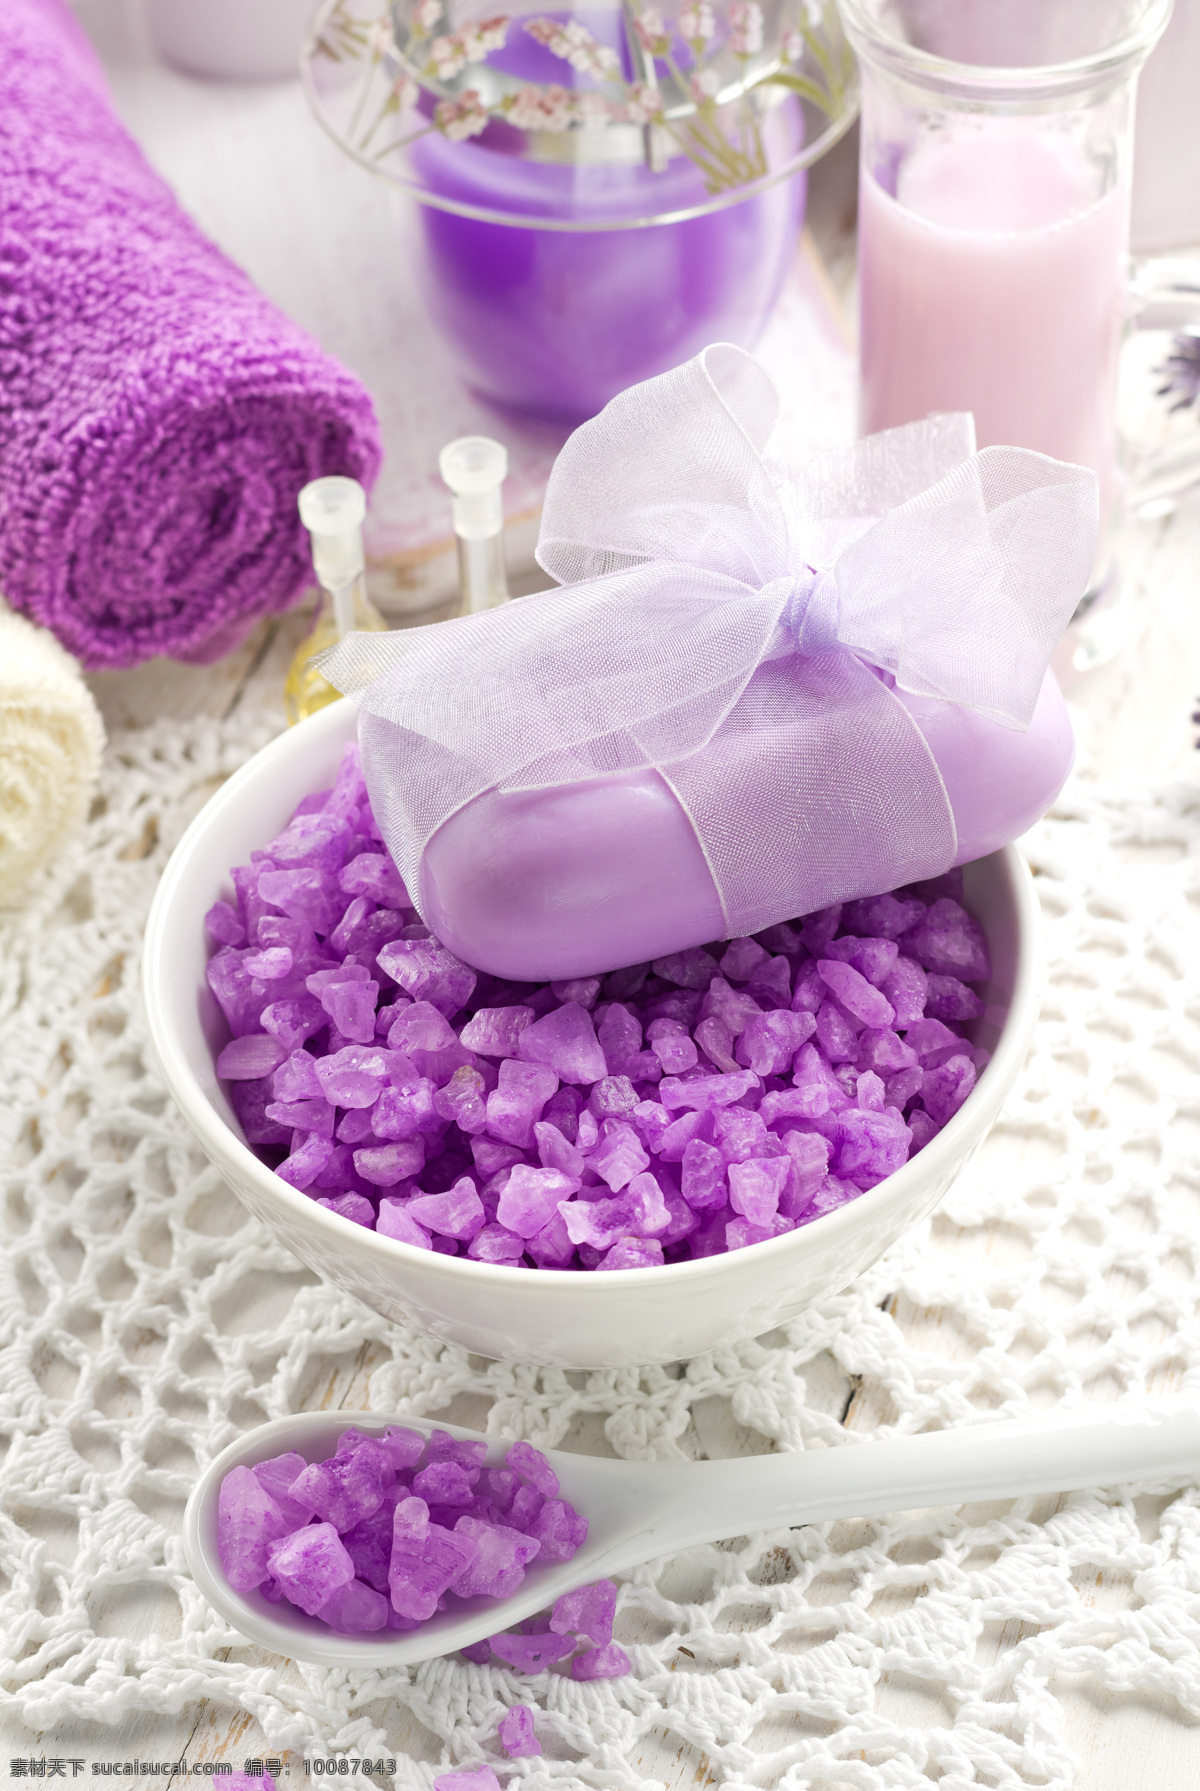 紫色 碎石 养生 spa 美容 紫色碎石 紫色香皂 白色木板背景 毛巾 spa美容 水疗 用品 美容护肤品 生活用品 生活百科 美容健身